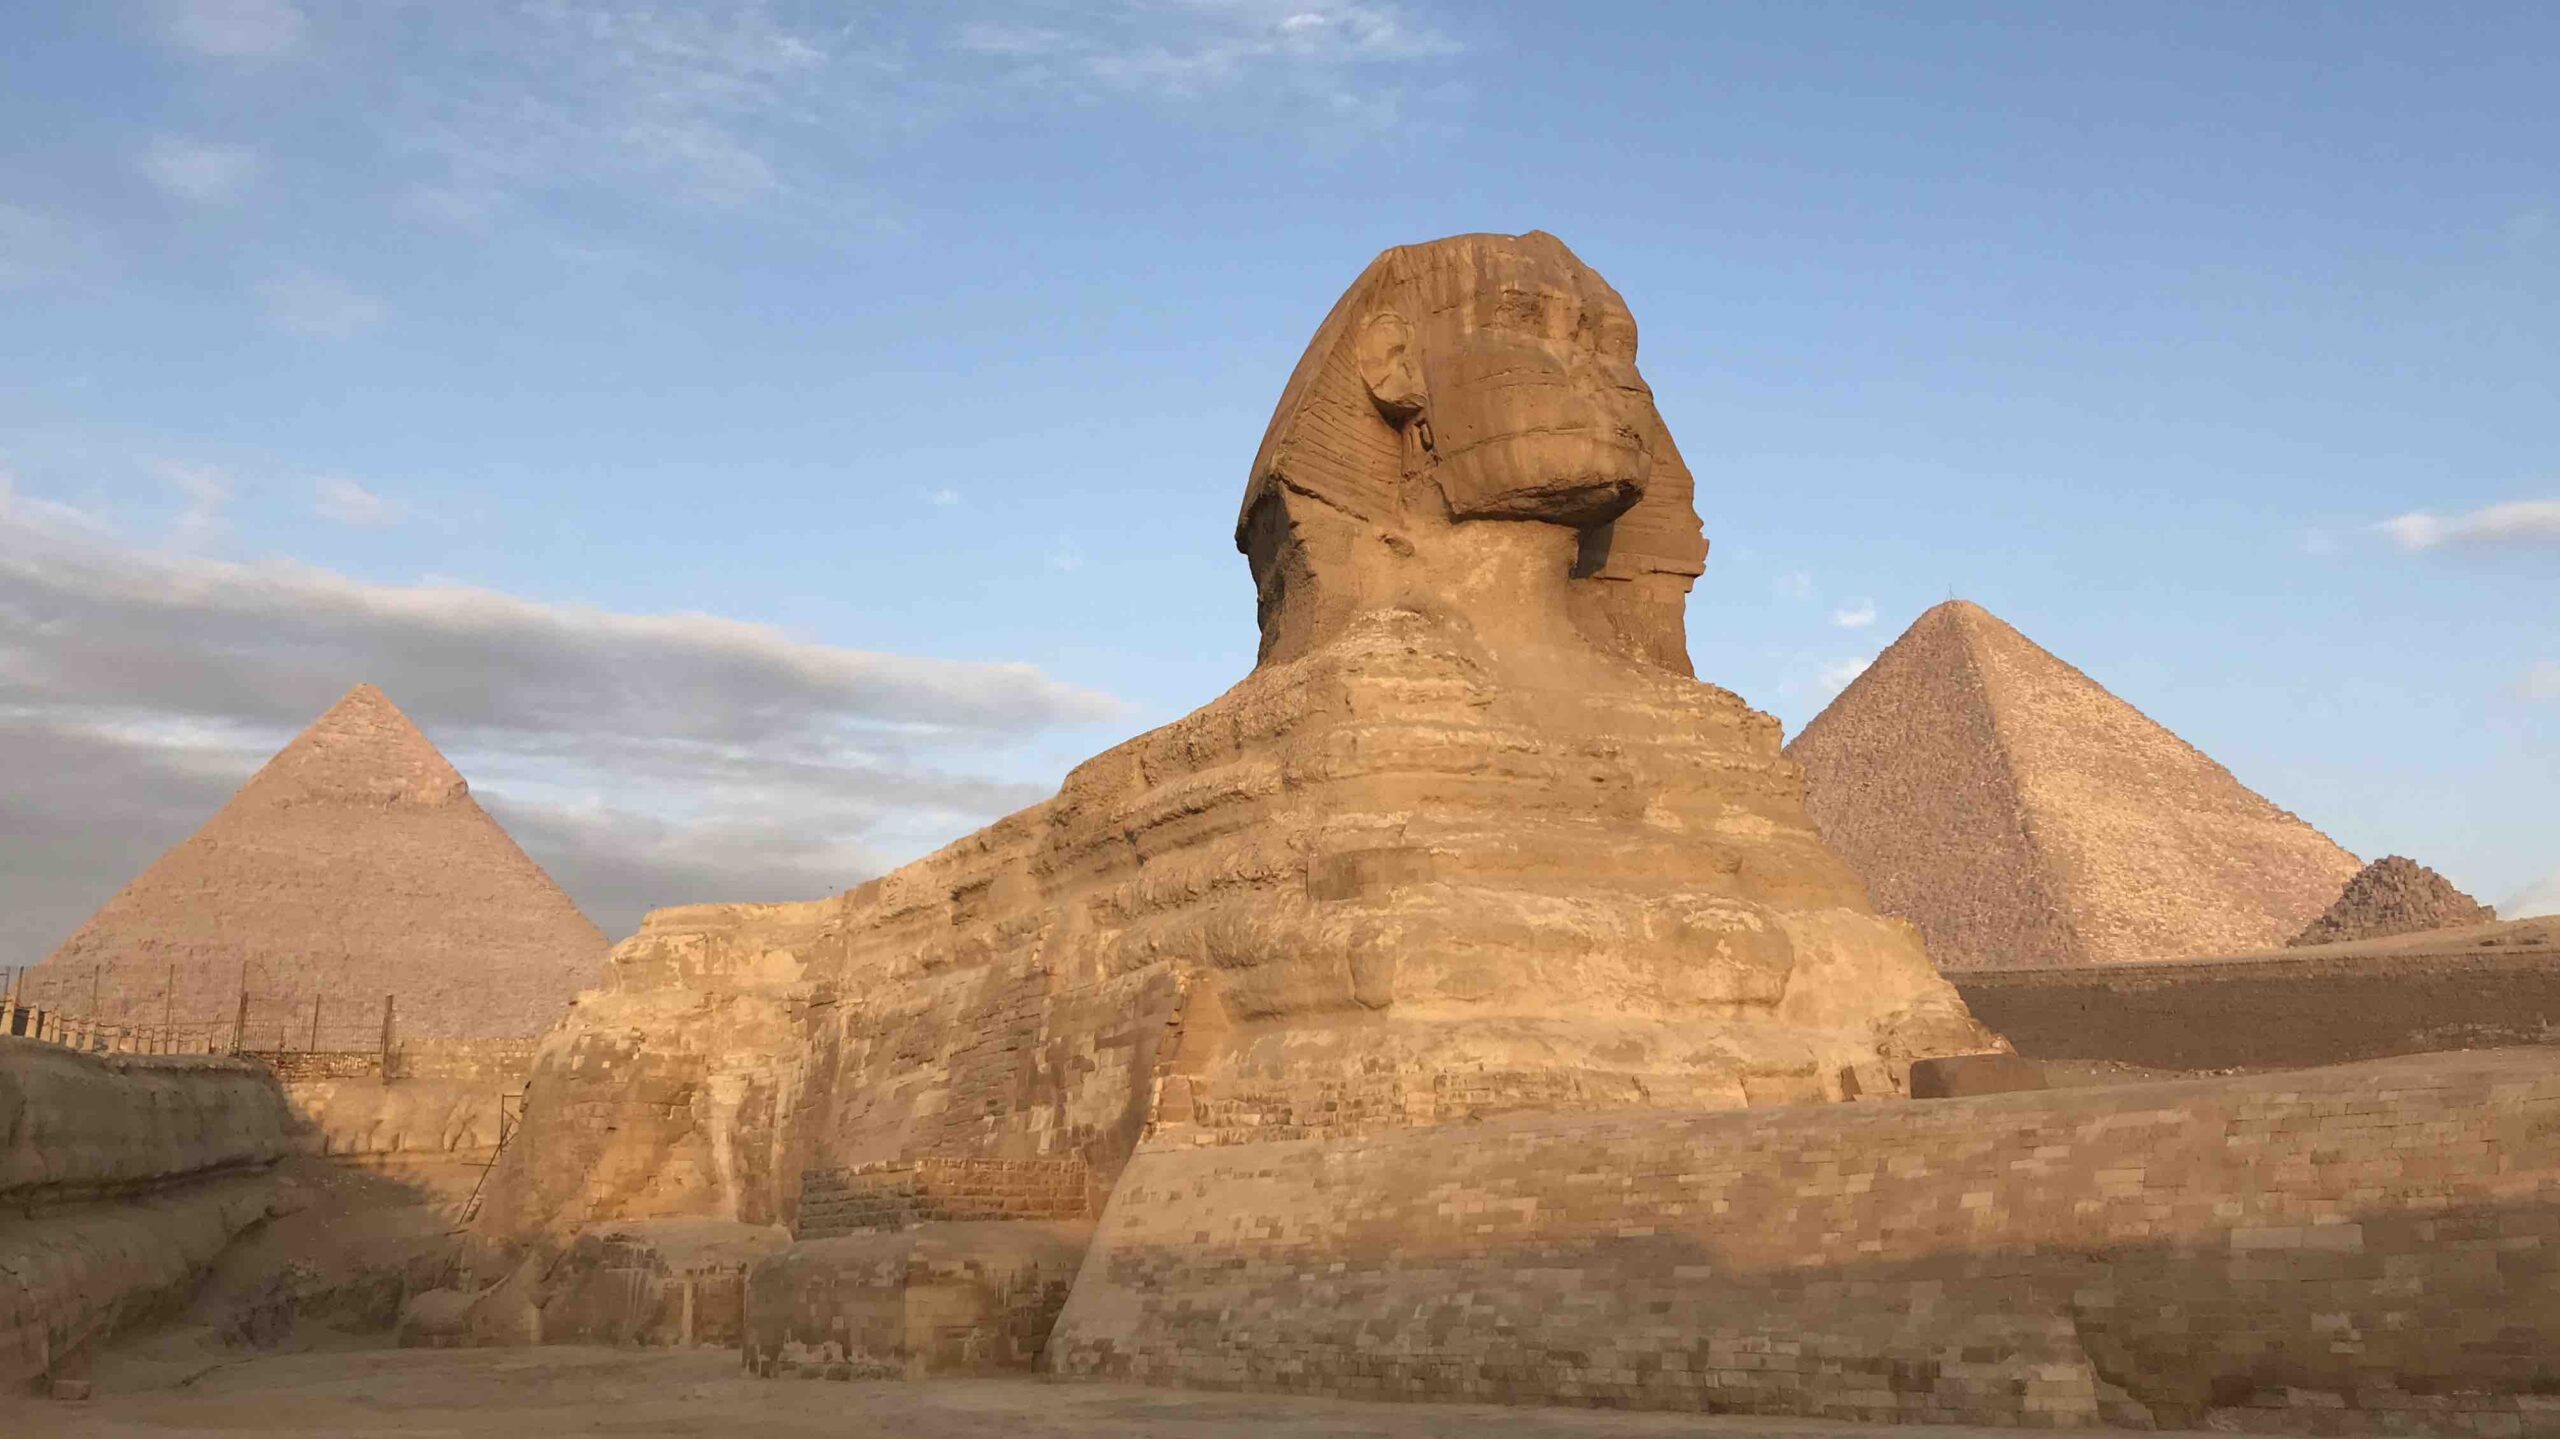 Sphinx2Pyramids-luxury cairo things to do gina baksa